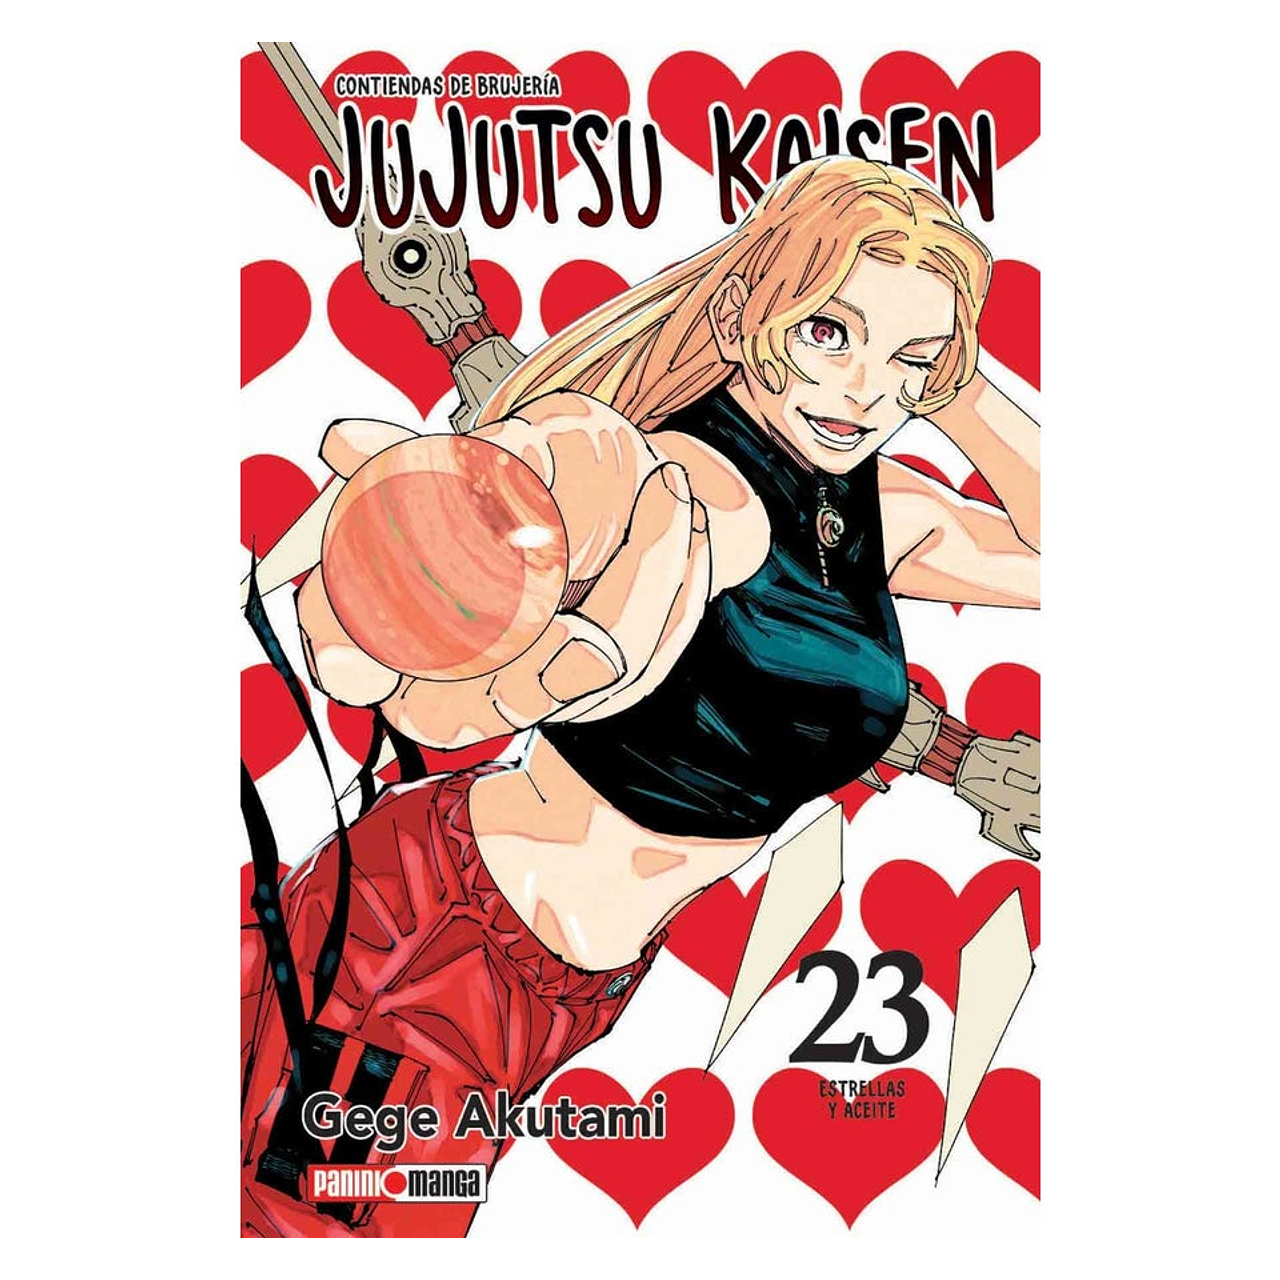 JUJUTSU KAISEN #23